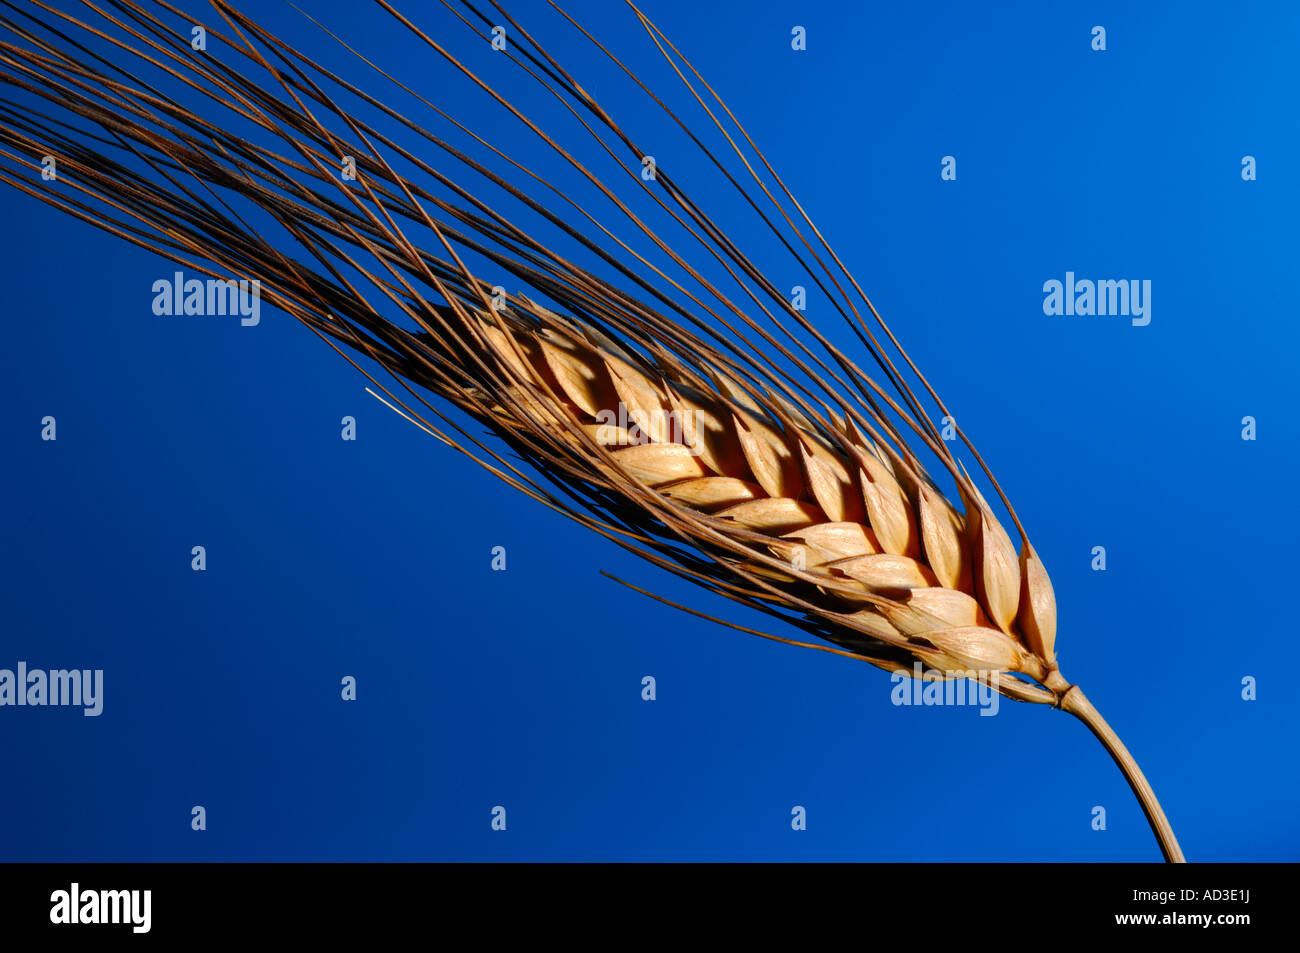 L'aide de tenons de blé sur fond bleu Banque D'Images